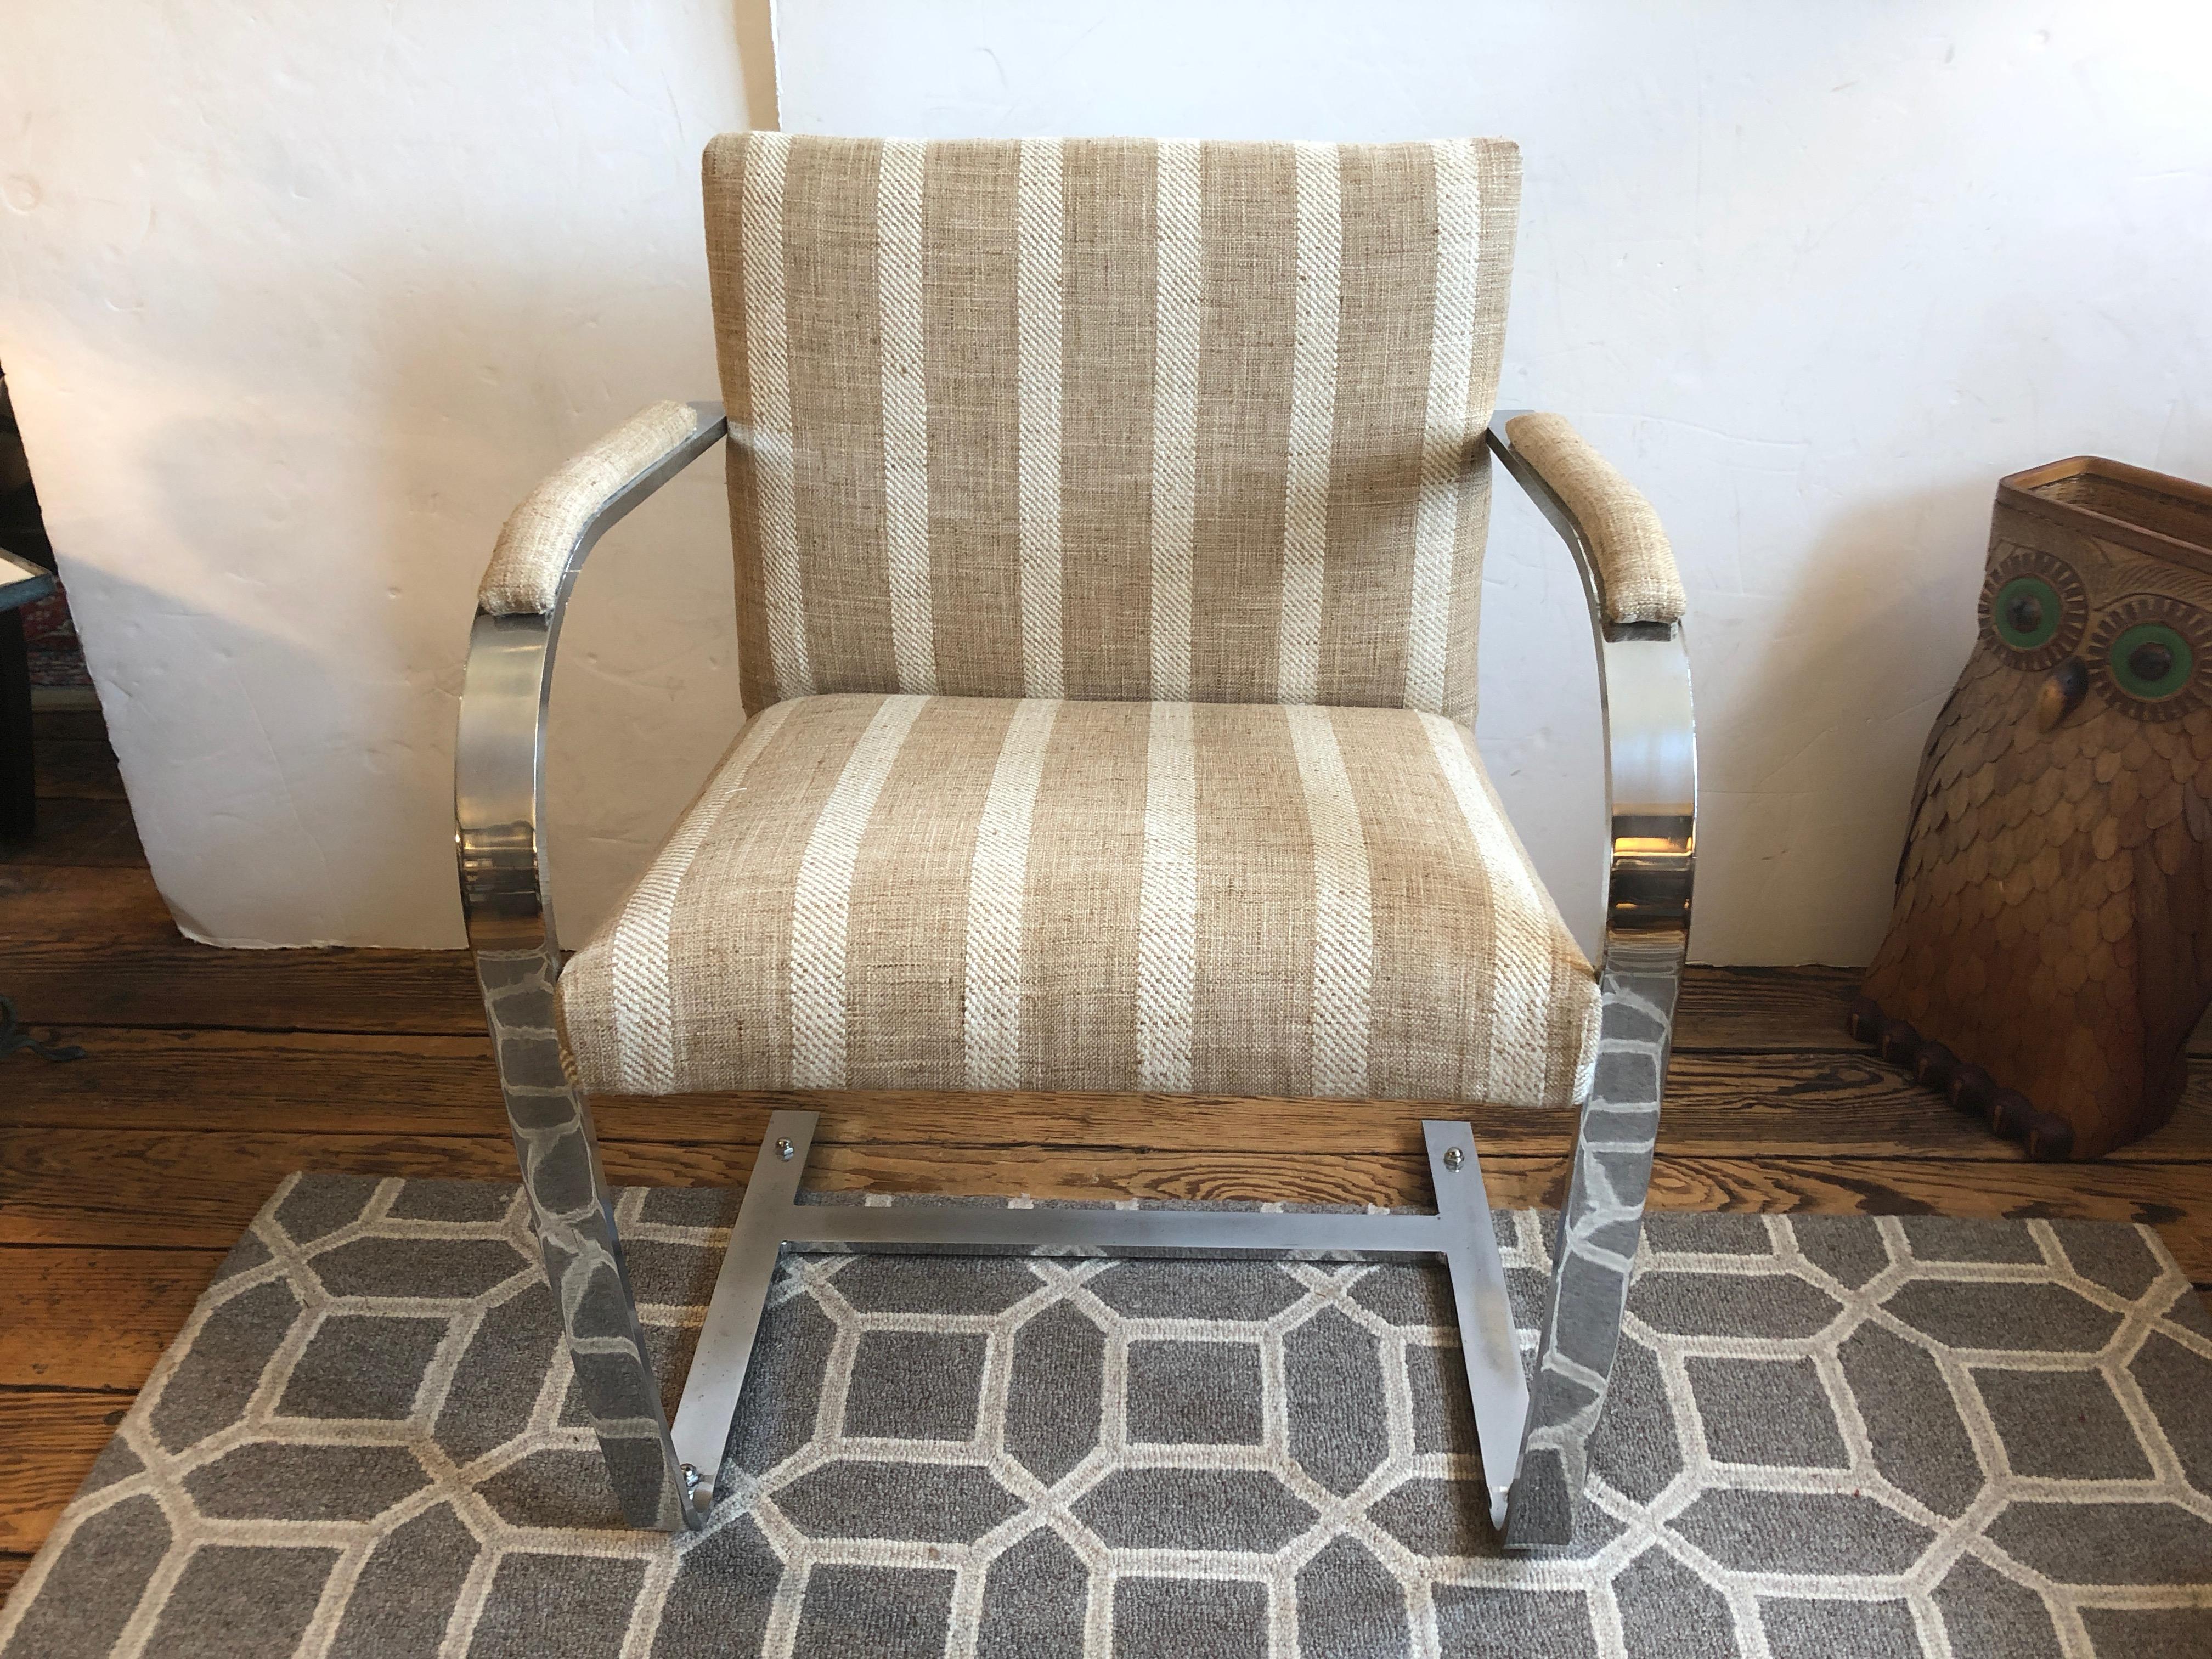 Belle paire de fauteuils modernes du milieu du siècle dans le style de Milo Baughman, avec des accoudoirs et une base lourdement chromés, récemment tapissés d'un tissu rayé beige et blanc, neutre et chic.